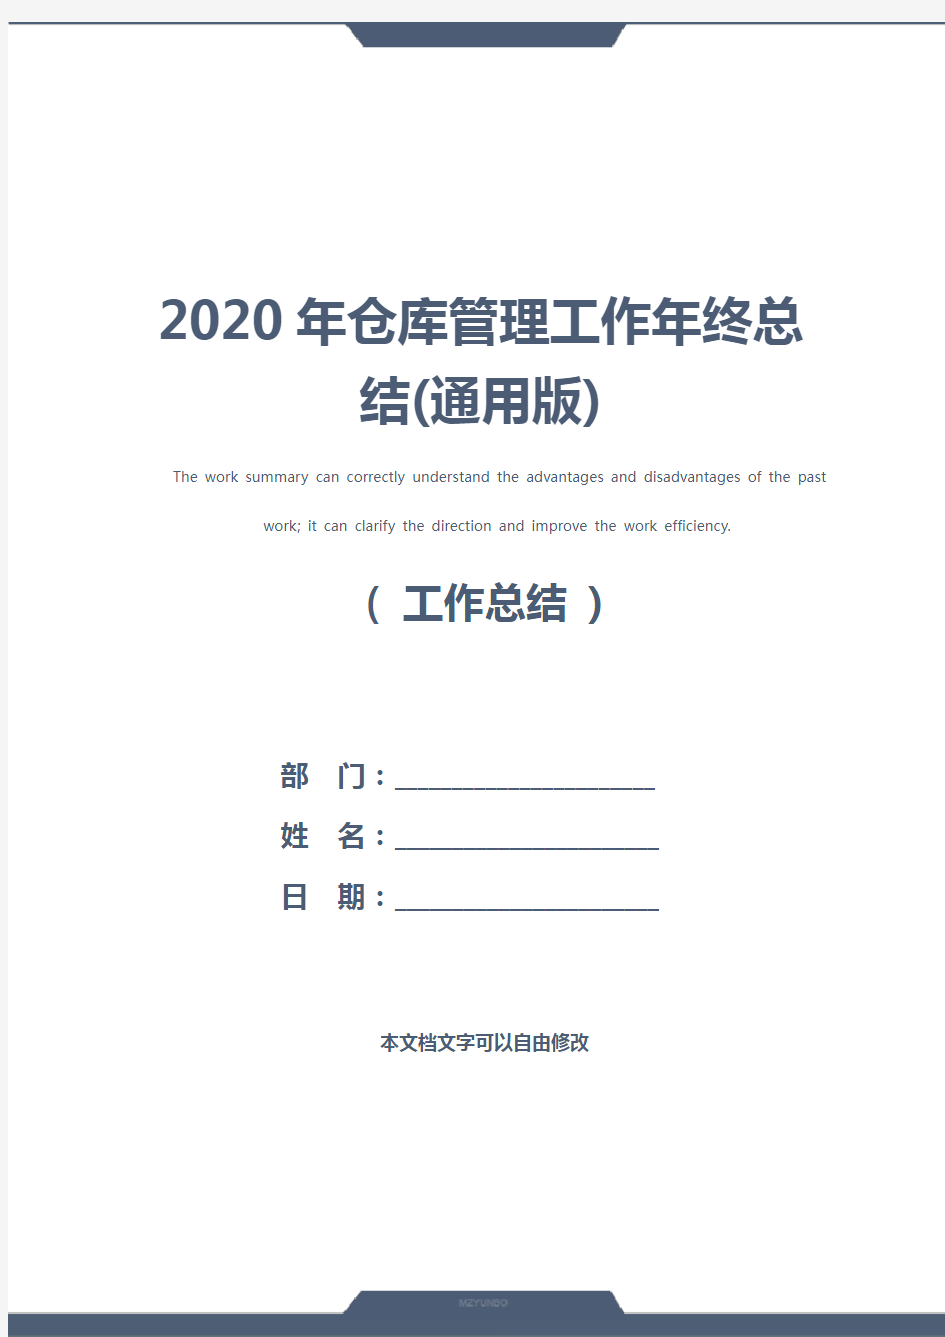 2020年仓库管理工作年终总结(通用版)